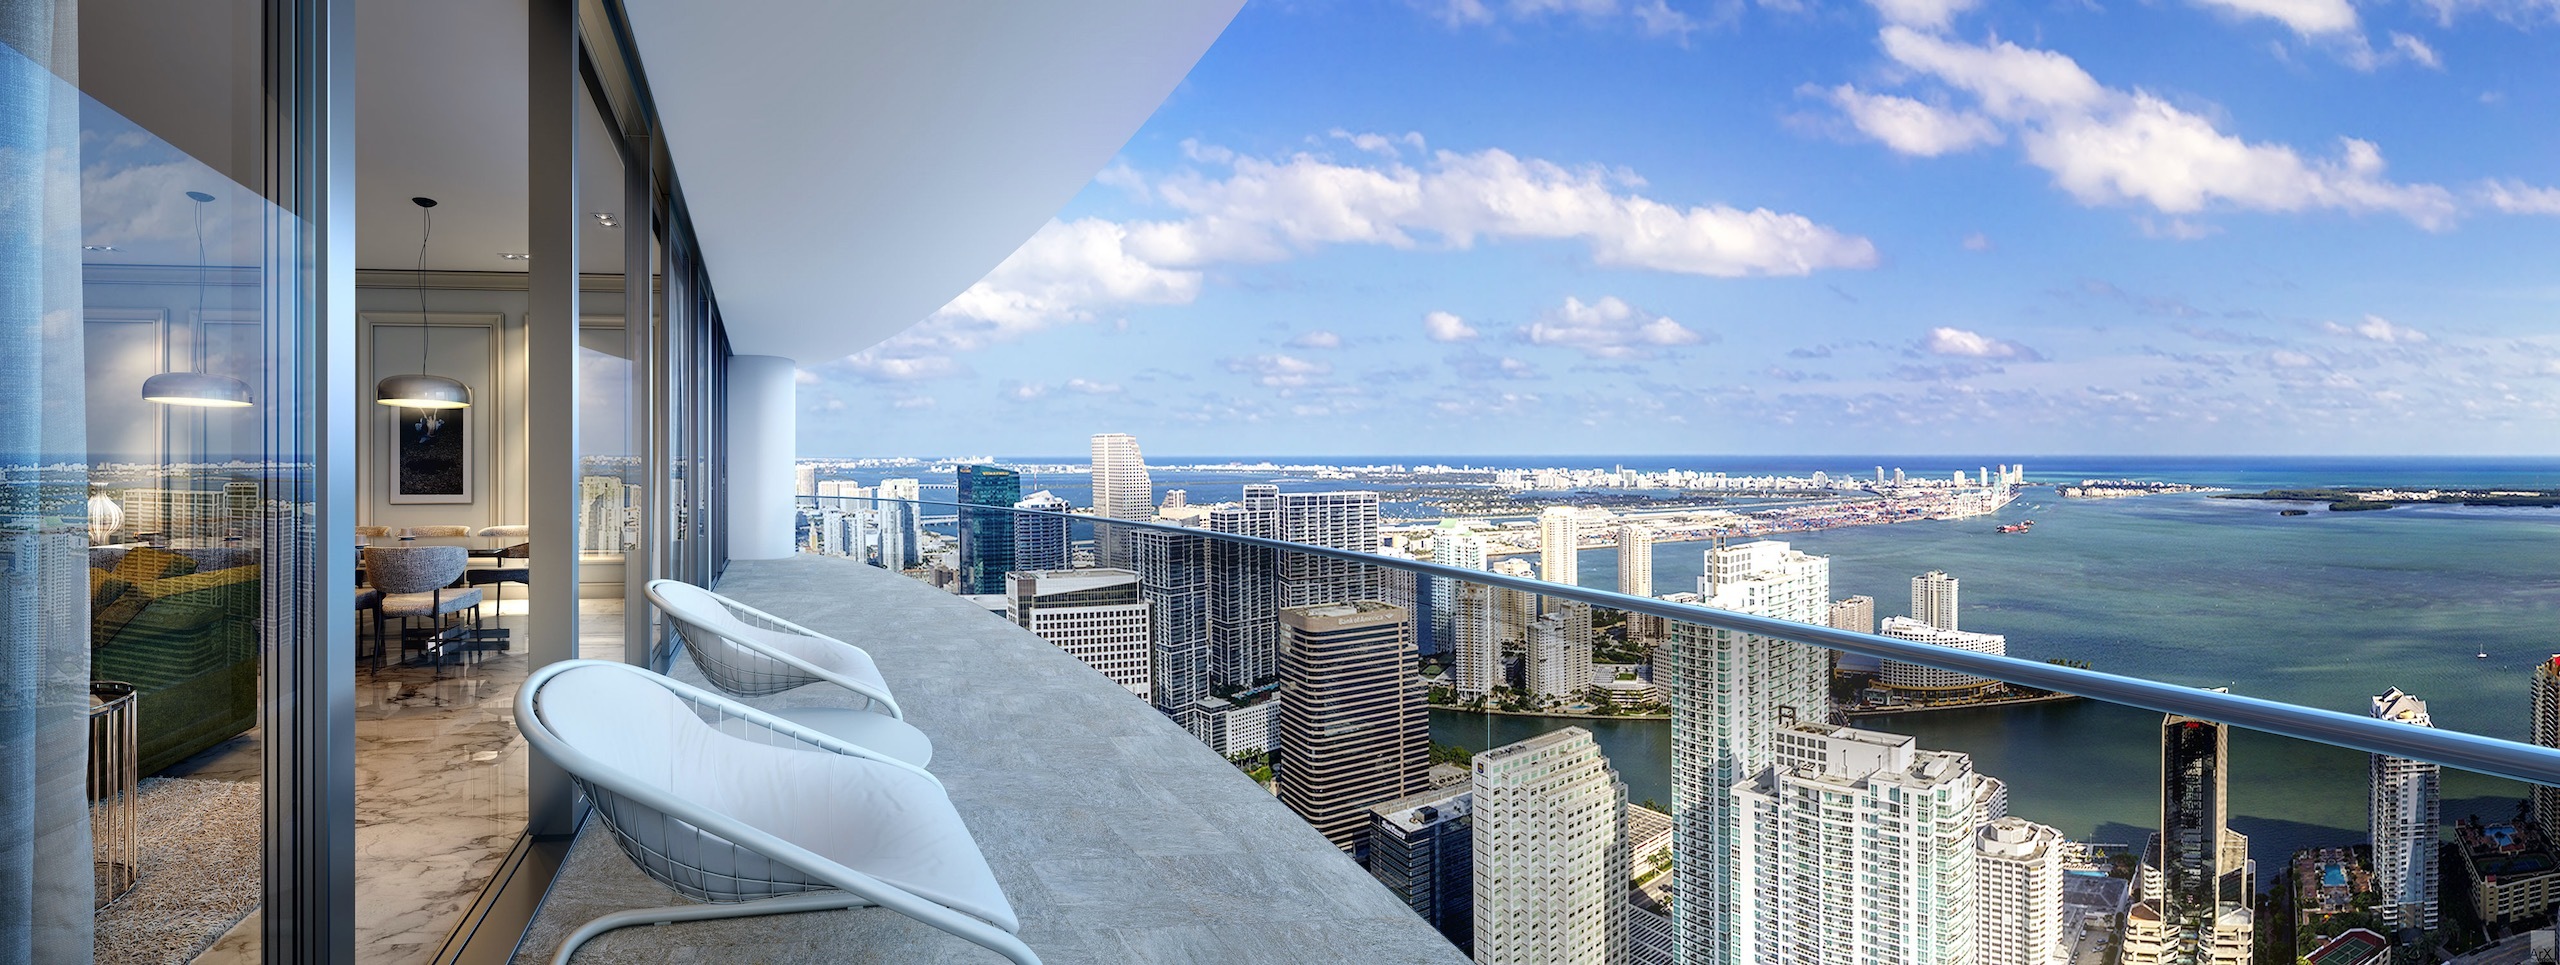 Brickell Flatiron Luxury Condos Downtown Miami For Sale